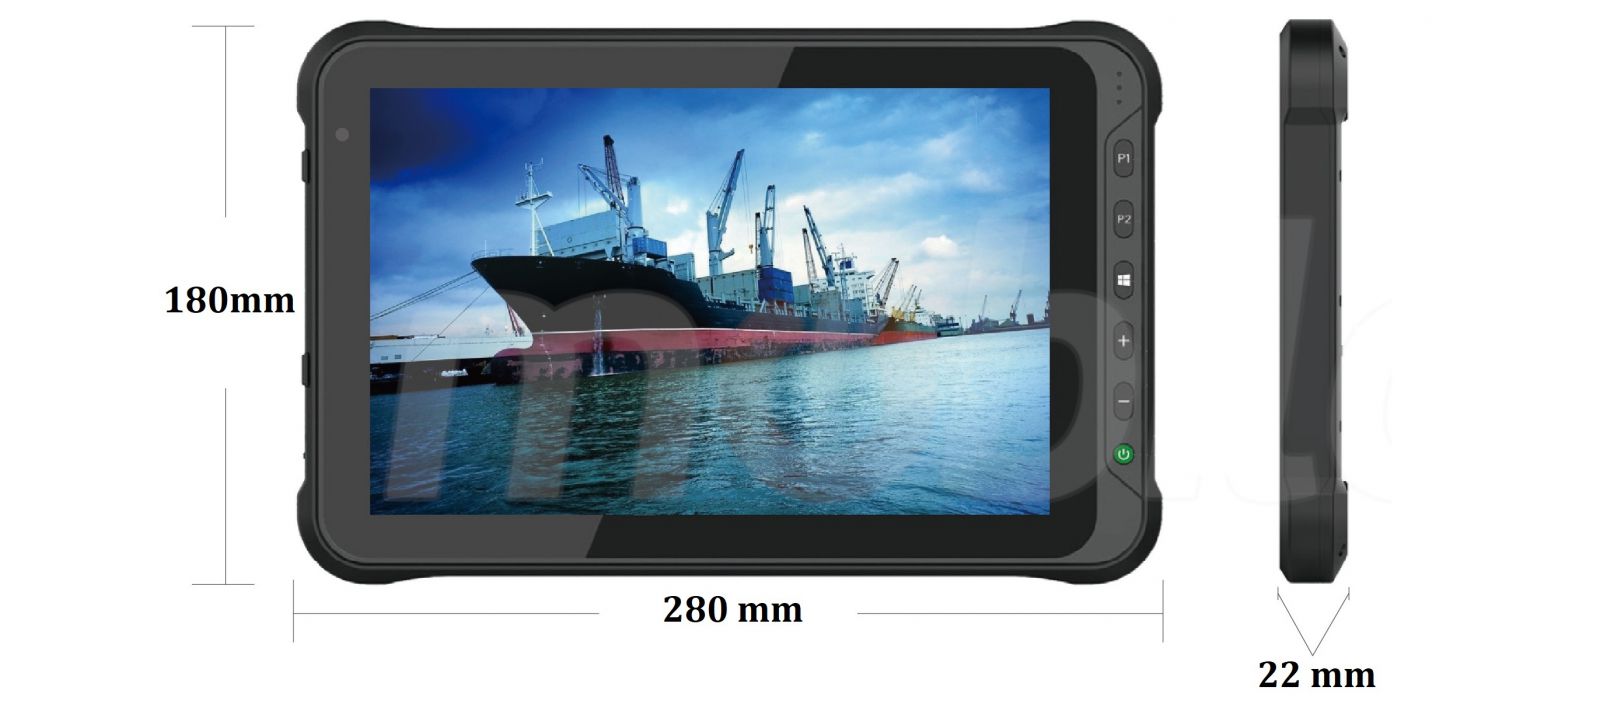 Emdoor I15HH v.10 - Wielozadaniowy tablet z WINDOWS 10 IoT, UHF RFID, z moduem BT 4.2, 4G, 4GB RAM pamici, dyskiem 128GB, czytnikiem kodw 2D Honeywell